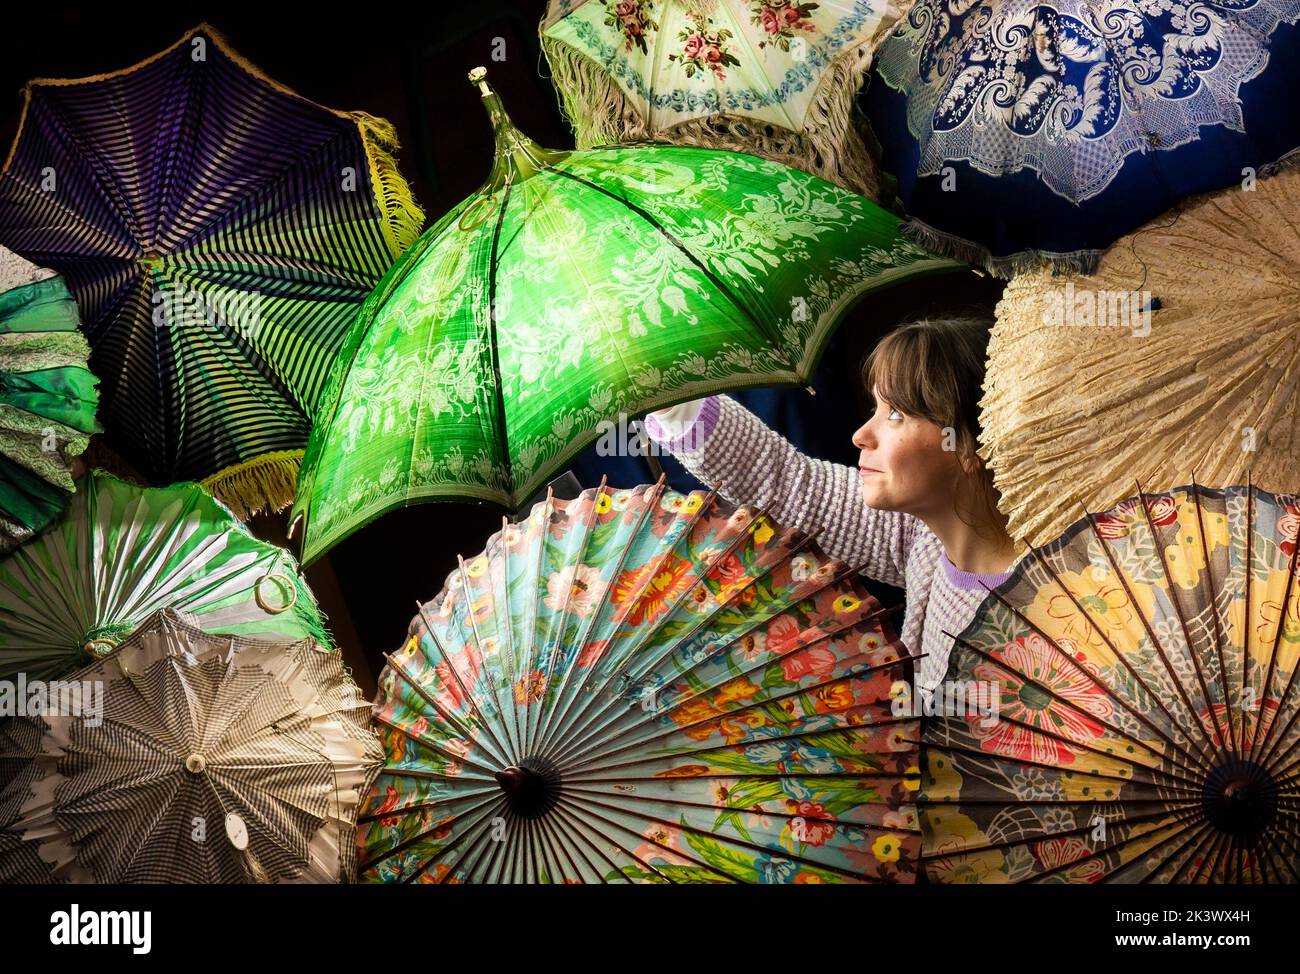 L'assistente curatore Vanessa Jones con parte di una collocazione di oltre 230 ombrelli e ombrelloni storici, alcuni dei quali risalgono agli anni '1800s, che viene salvata grazie ad un accurato progetto di conservazione presso il Leeds Discovery Centre nello Yorkshire. Data immagine: Mercoledì 28 settembre 2022. Foto Stock